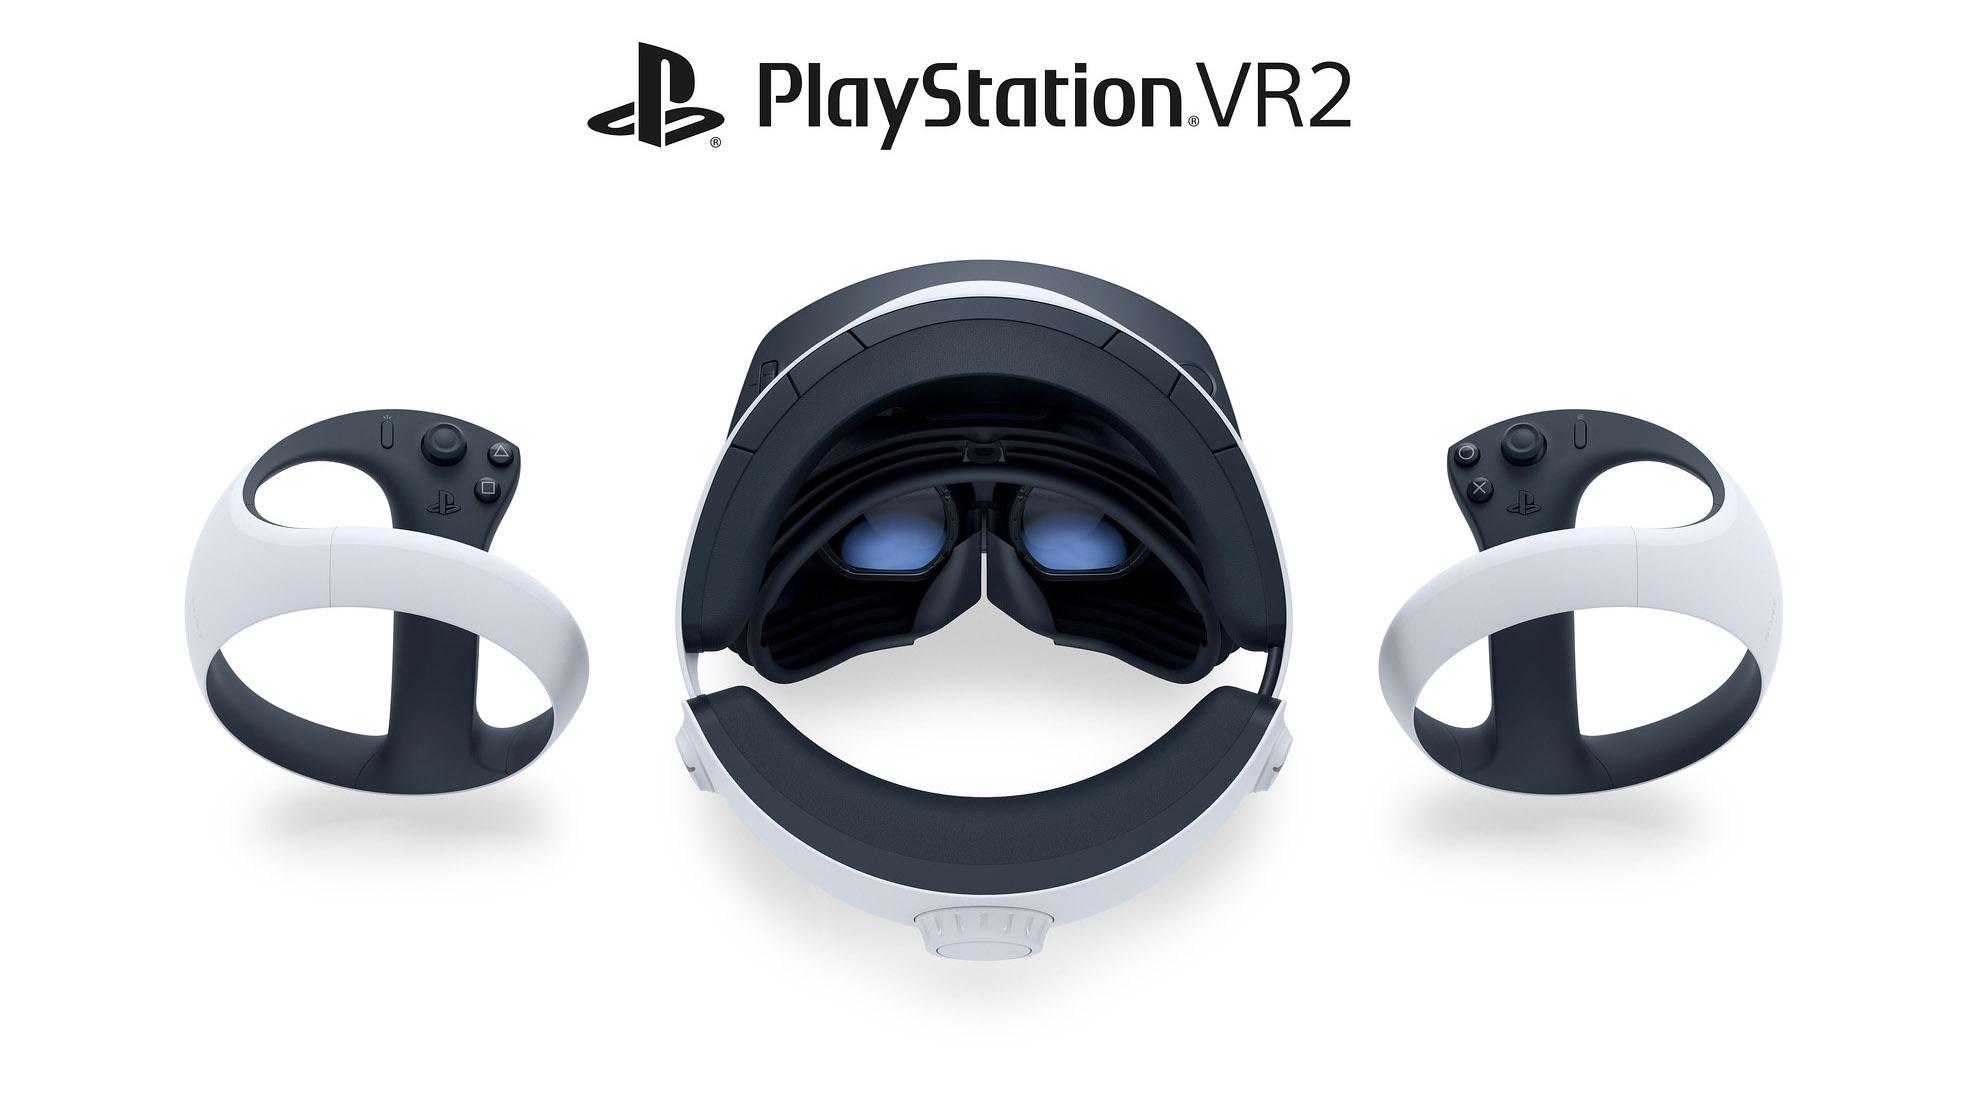 Slik ser Playstation VR2 ut. 